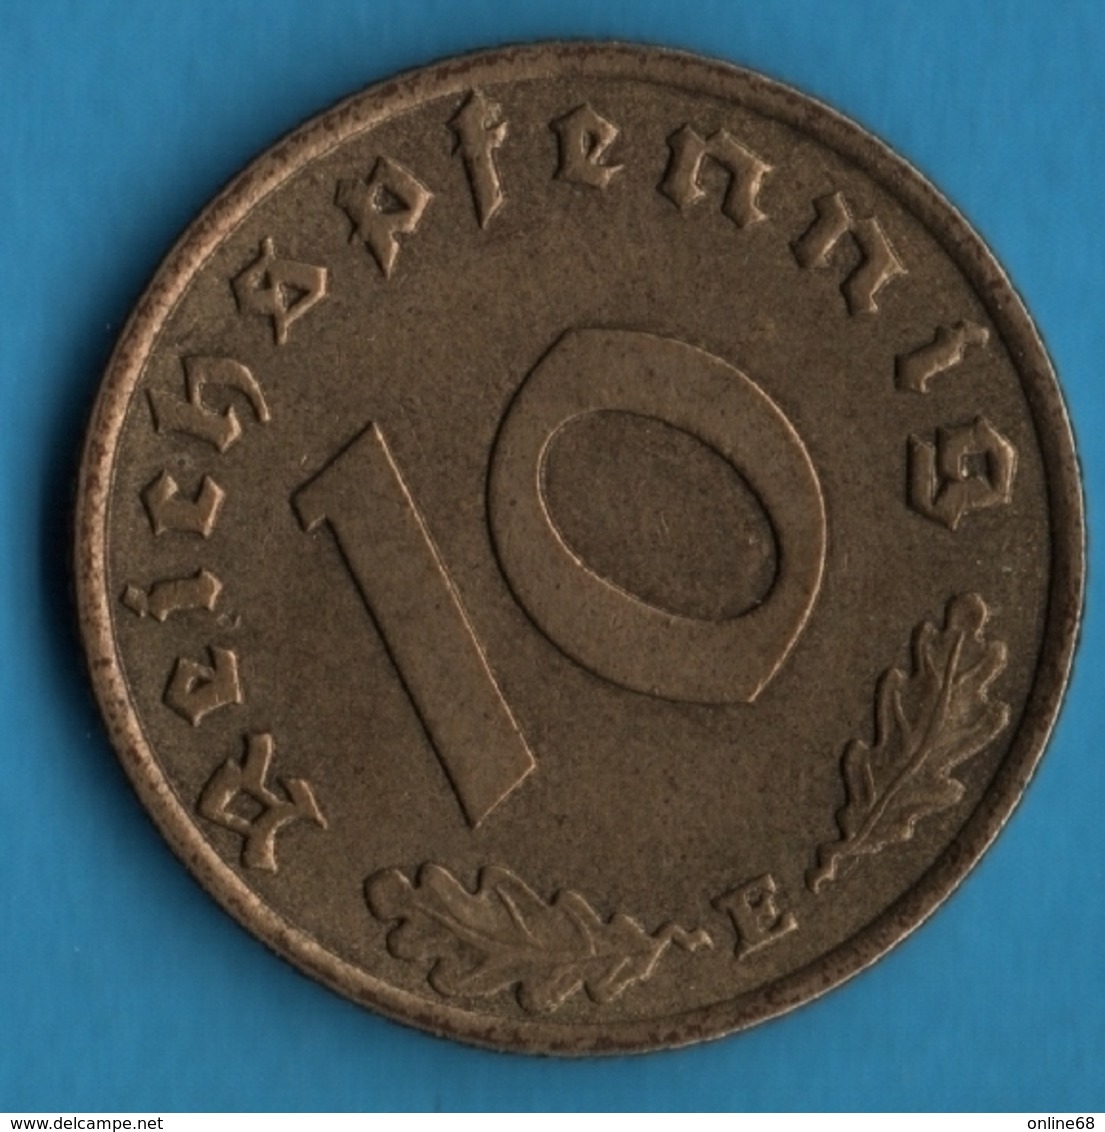 DEUTSCHES REICH 10 REICHSPFENNIG 1938 E KM# 92 (svastika) - 10 Reichspfennig